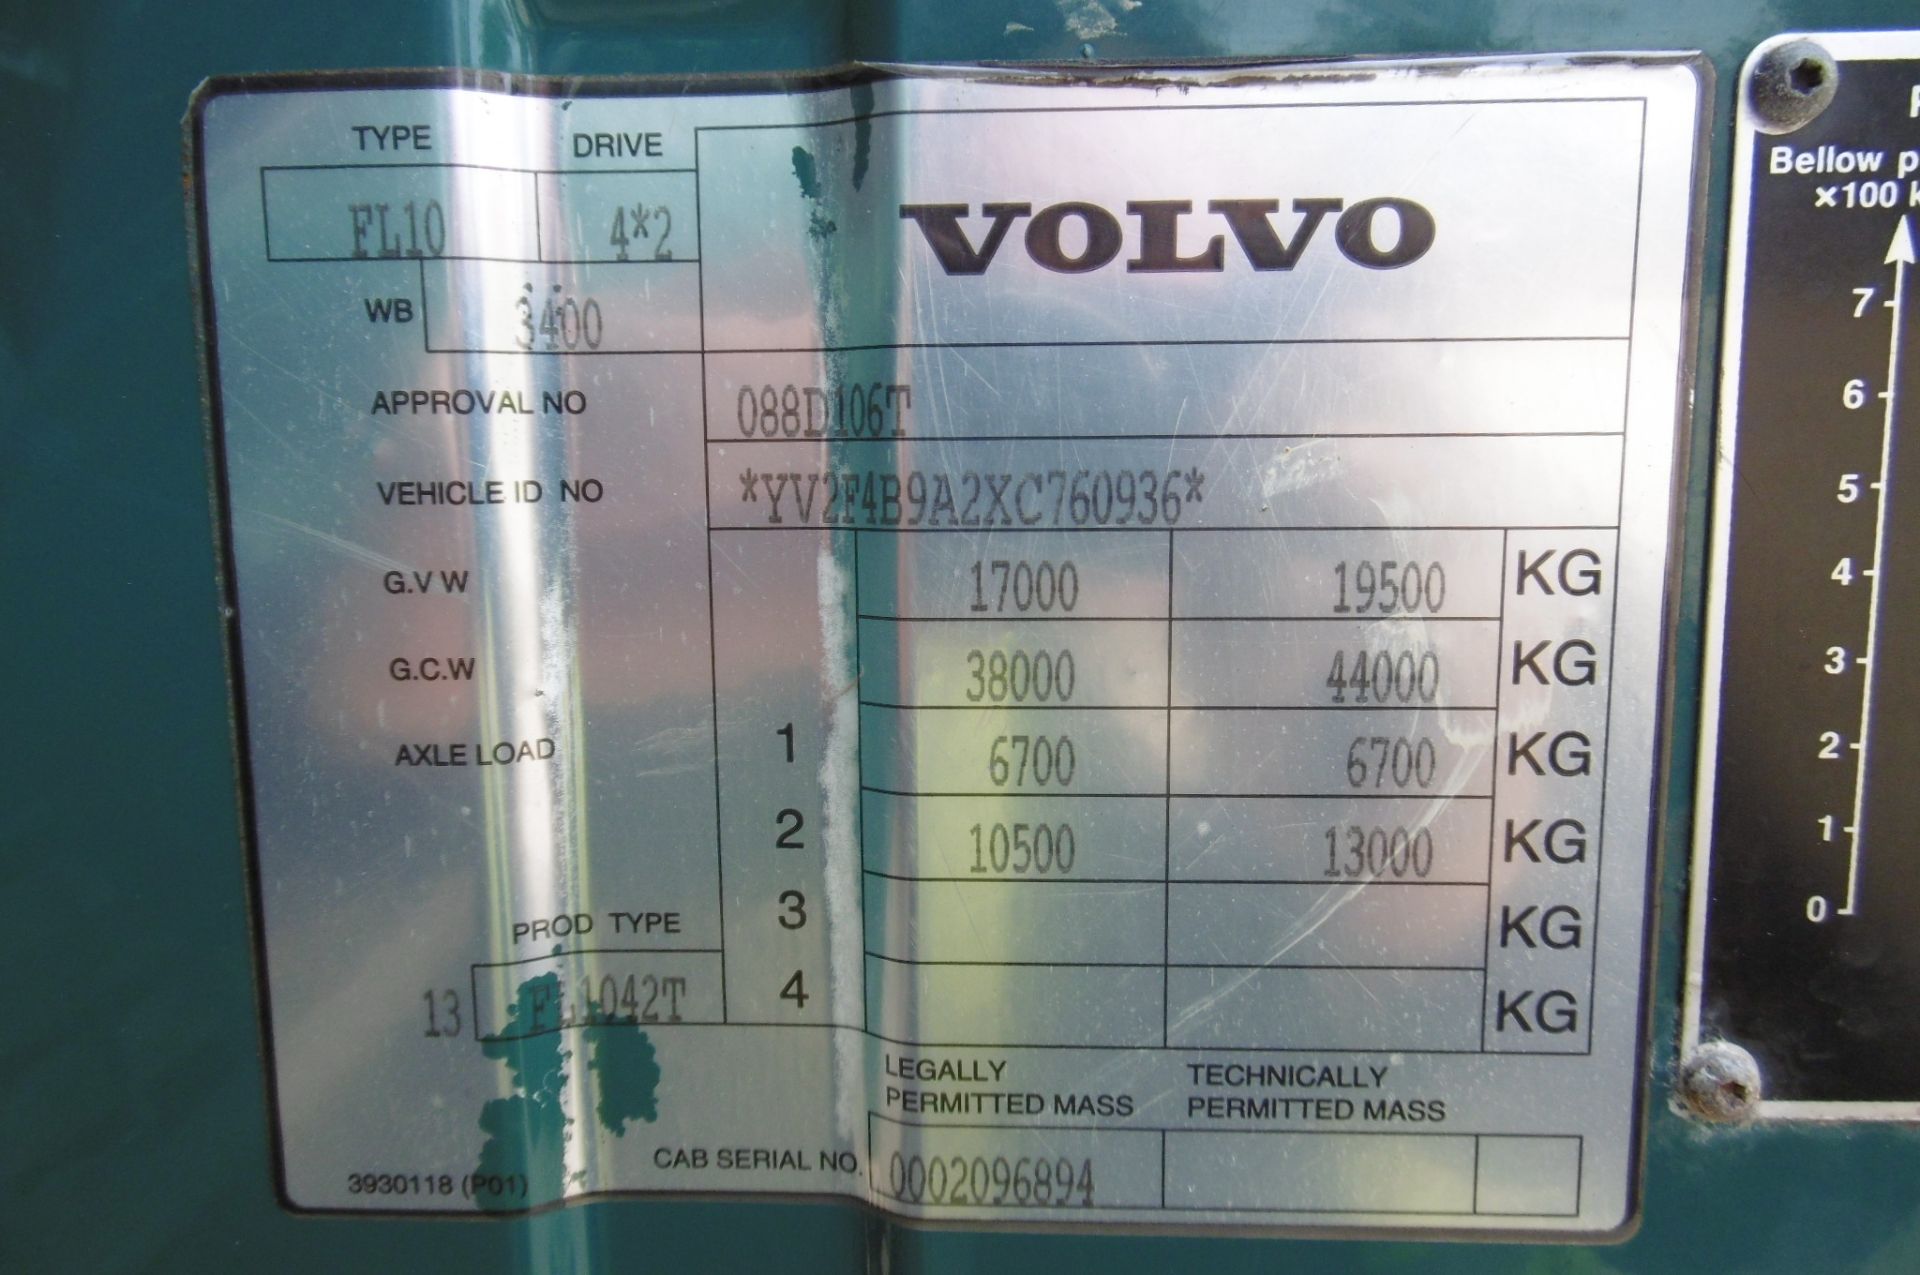 Volvo FL10 40ton 4x2 Tractor unit 24,814 km - Image 17 of 17